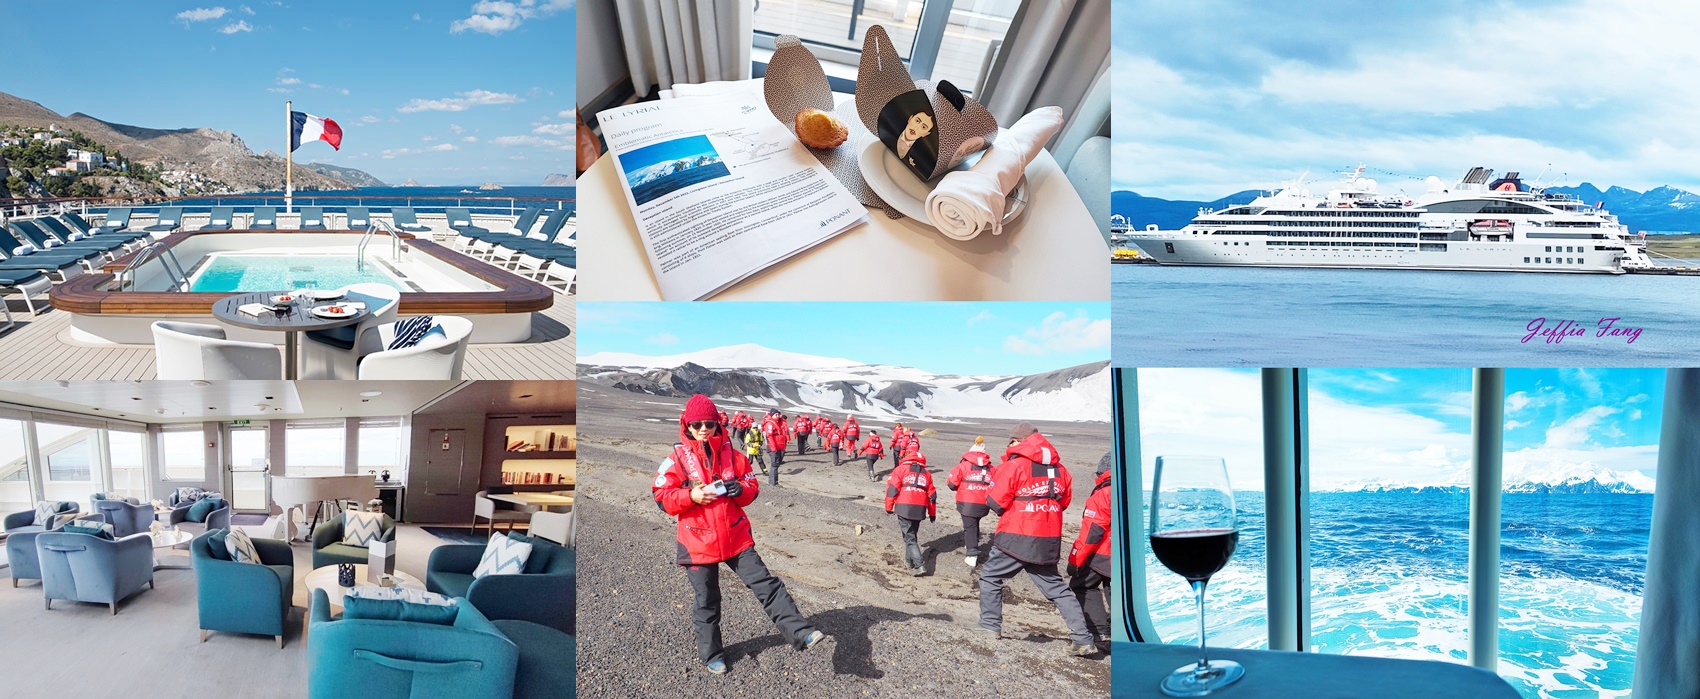 網站近期文章：◎極地之旅『南極Antarctica』(七)【龐洛PONANT郵輪『星輝號LE LYRIAL』】好的探險遊輪～體驗終生難忘的南極之旅(上)登船流程、星輝號設施娛樂、探險裝備及注意事項